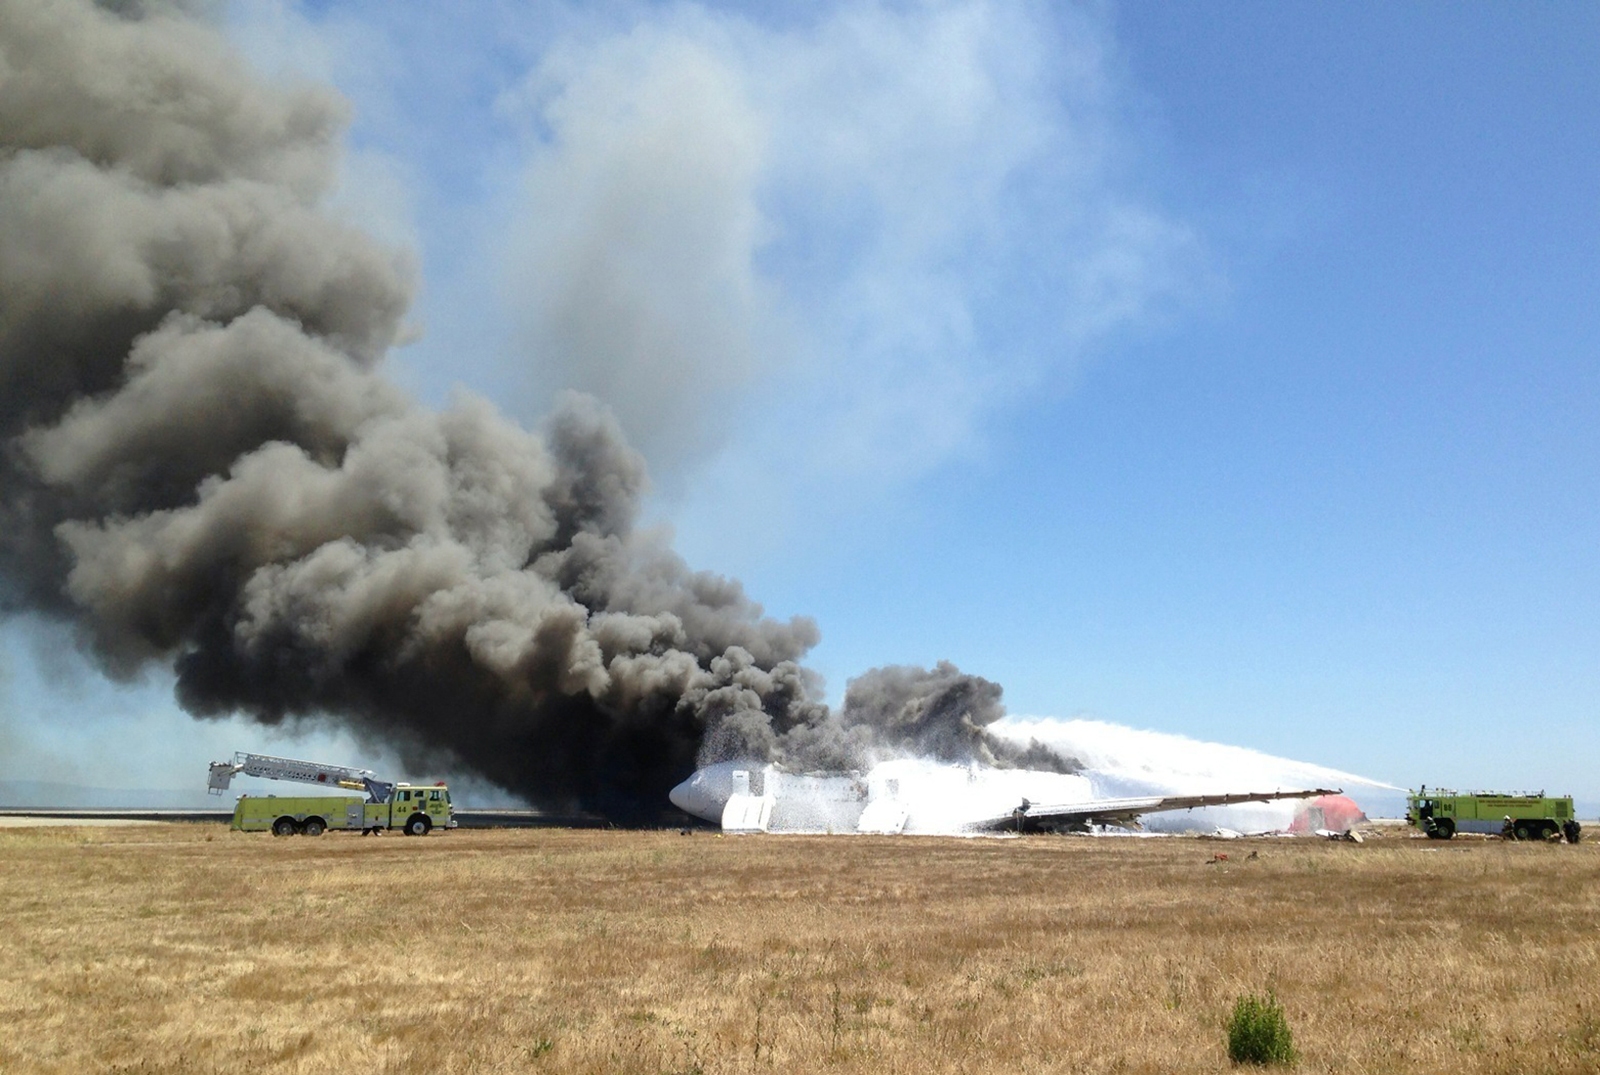 Λίγα λεπτά μετά τη συντριβή, το Boeing 777 έχει τυλιχτεί στις φλόγες - ΦΩΤΟ REUTERS 